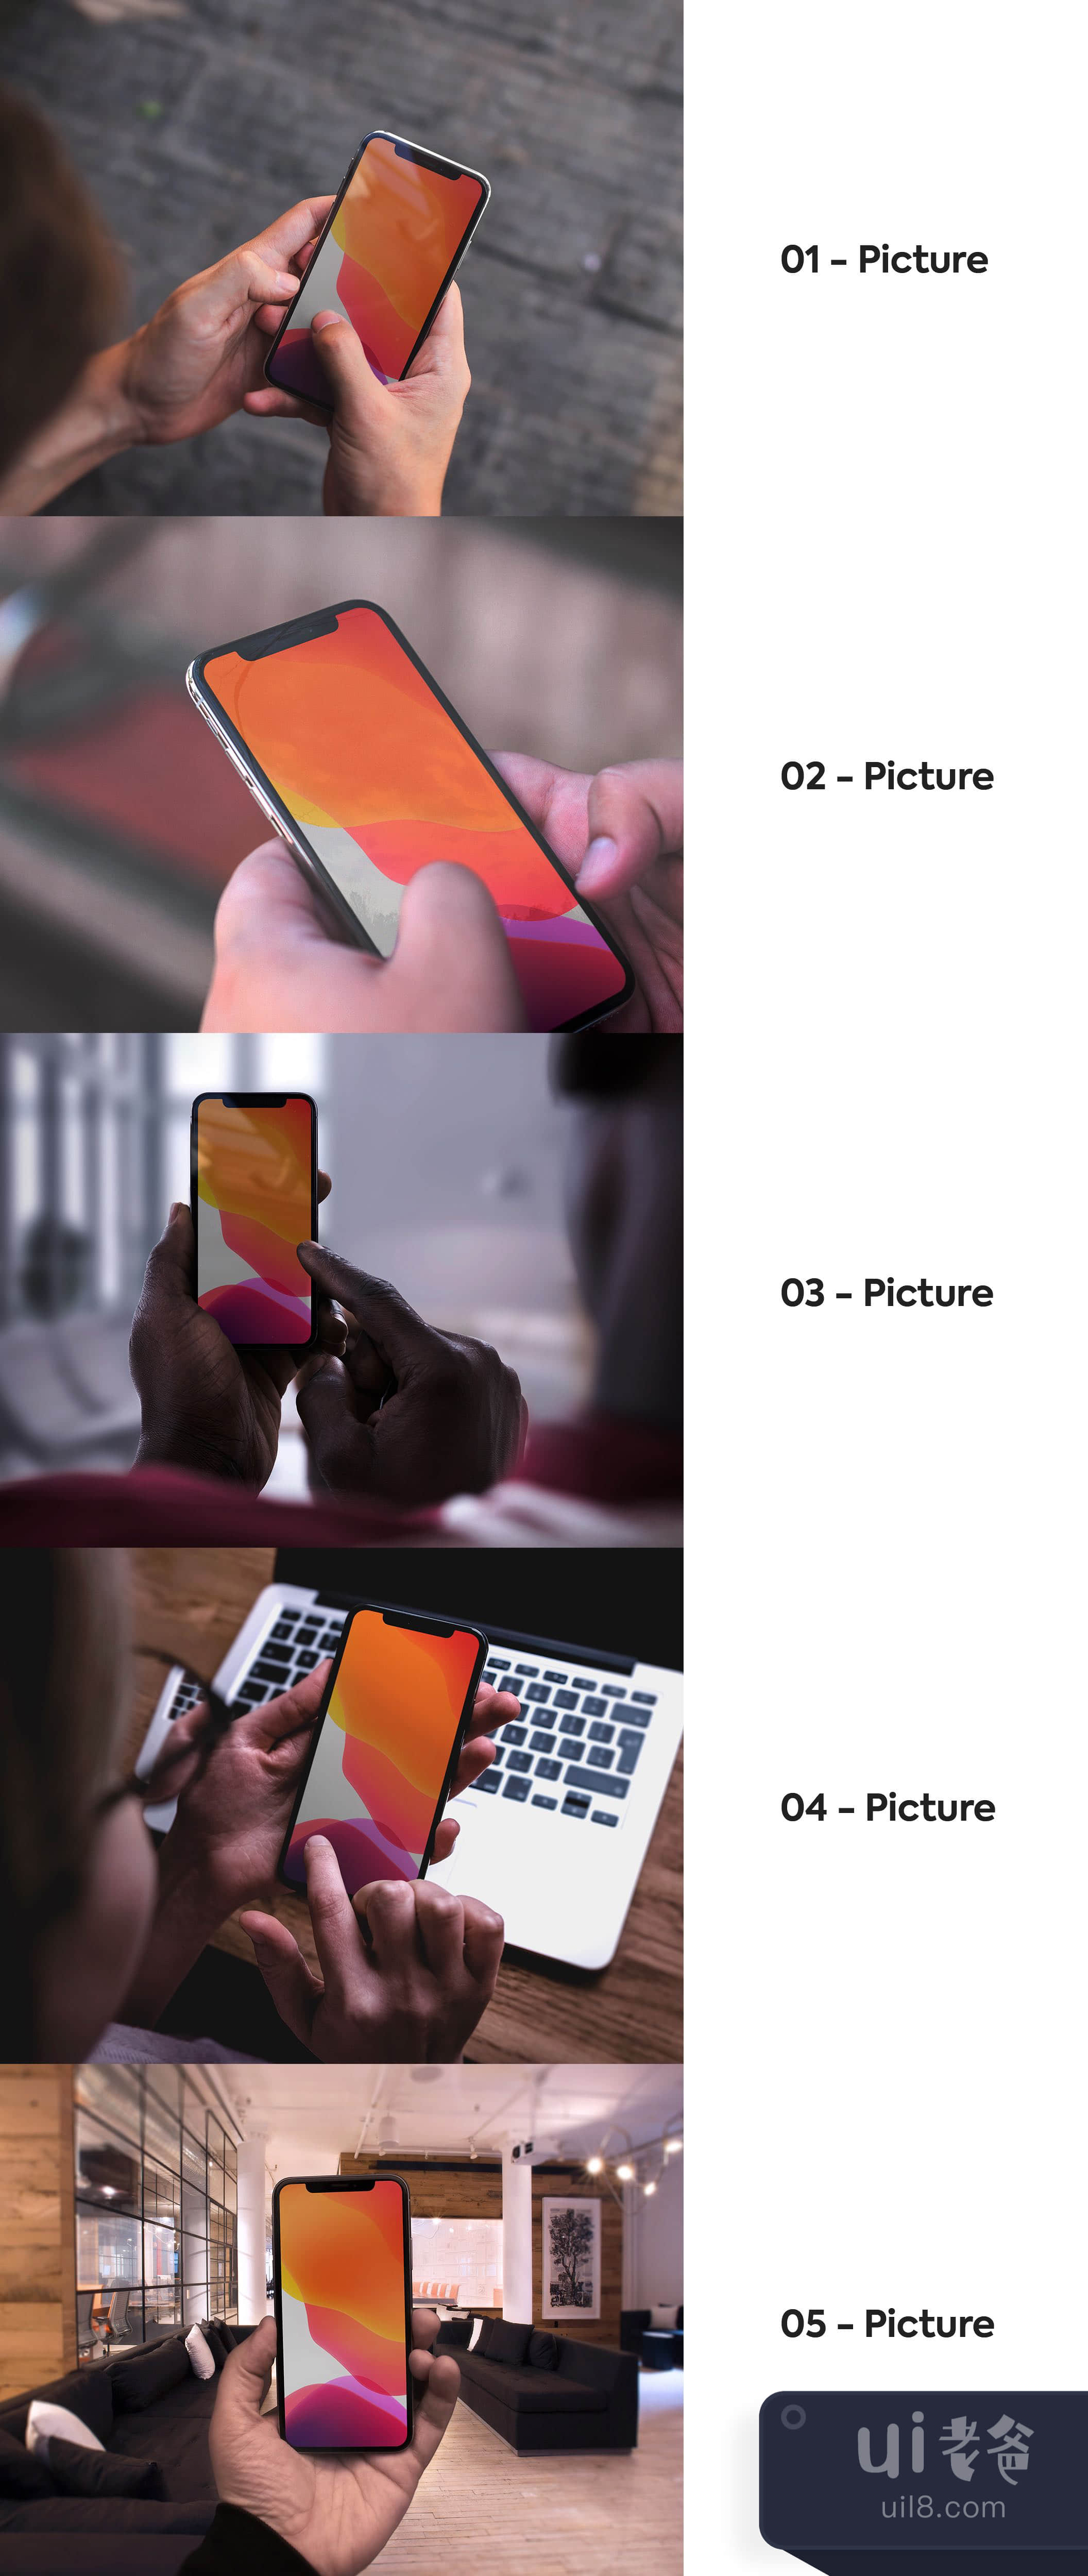 5张iPhone X的手部模拟图 (5 iPhone X in hand mockups)插图